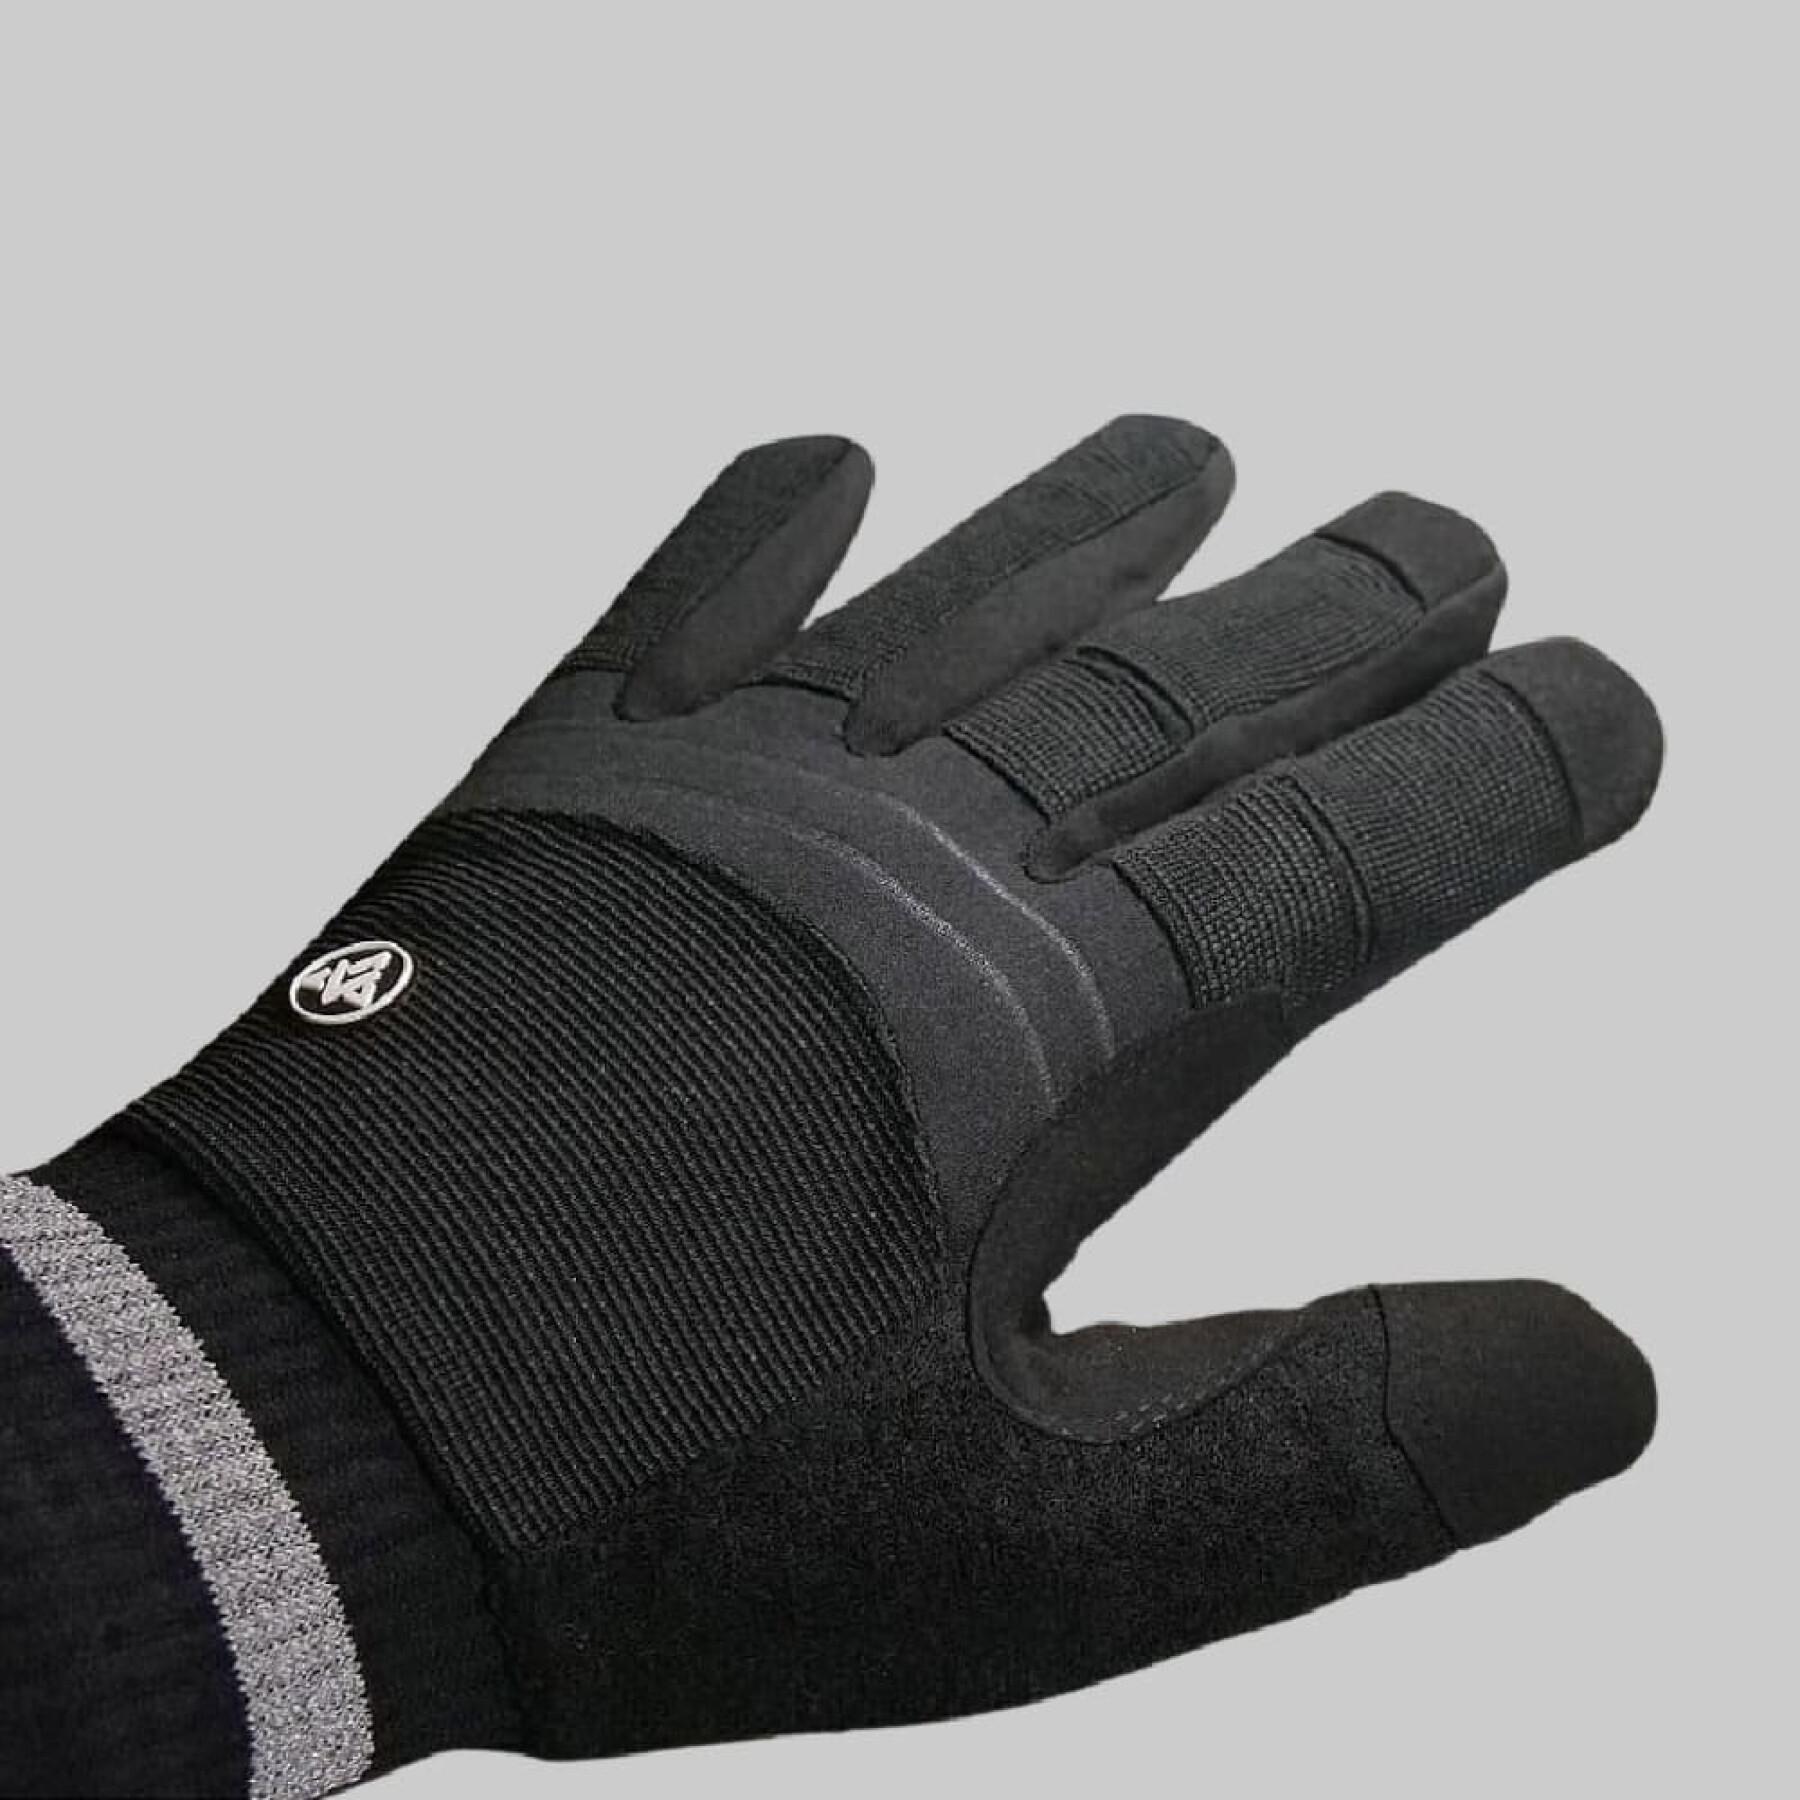 Handschuhe Verjari Tactical